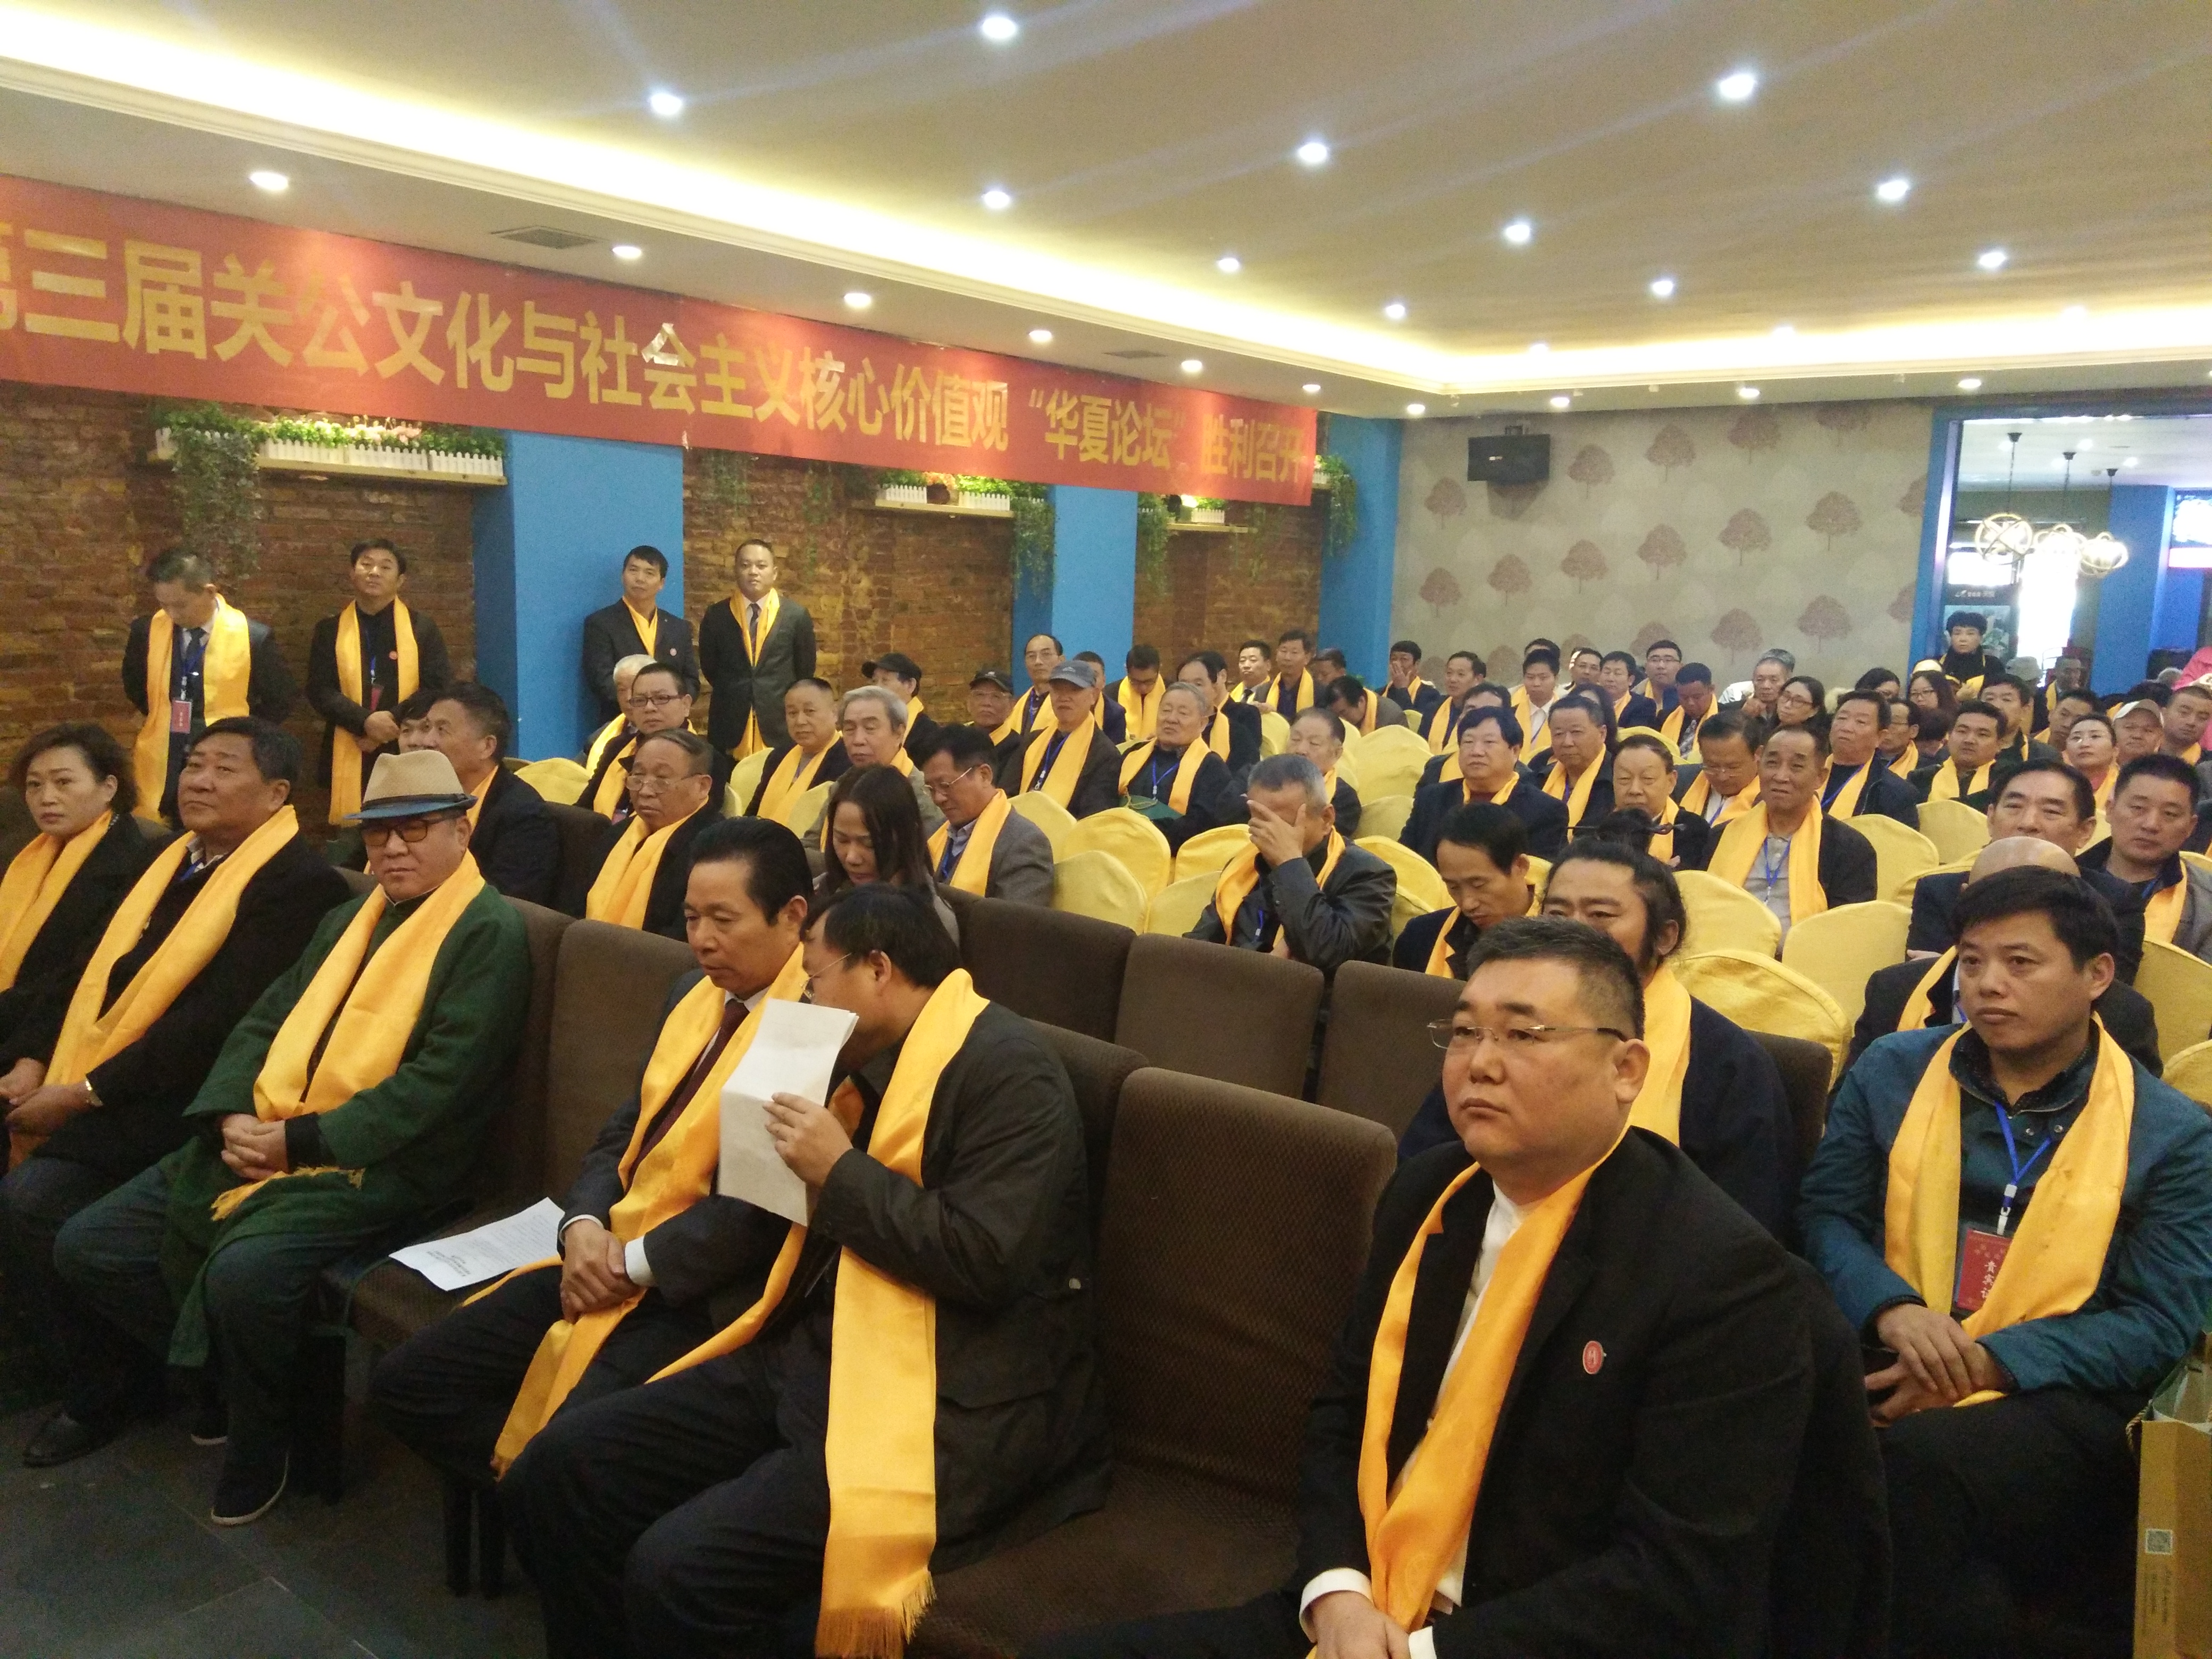 第三届关公文化和社会主义核心价值观  华夏论坛在郑州圆满举办